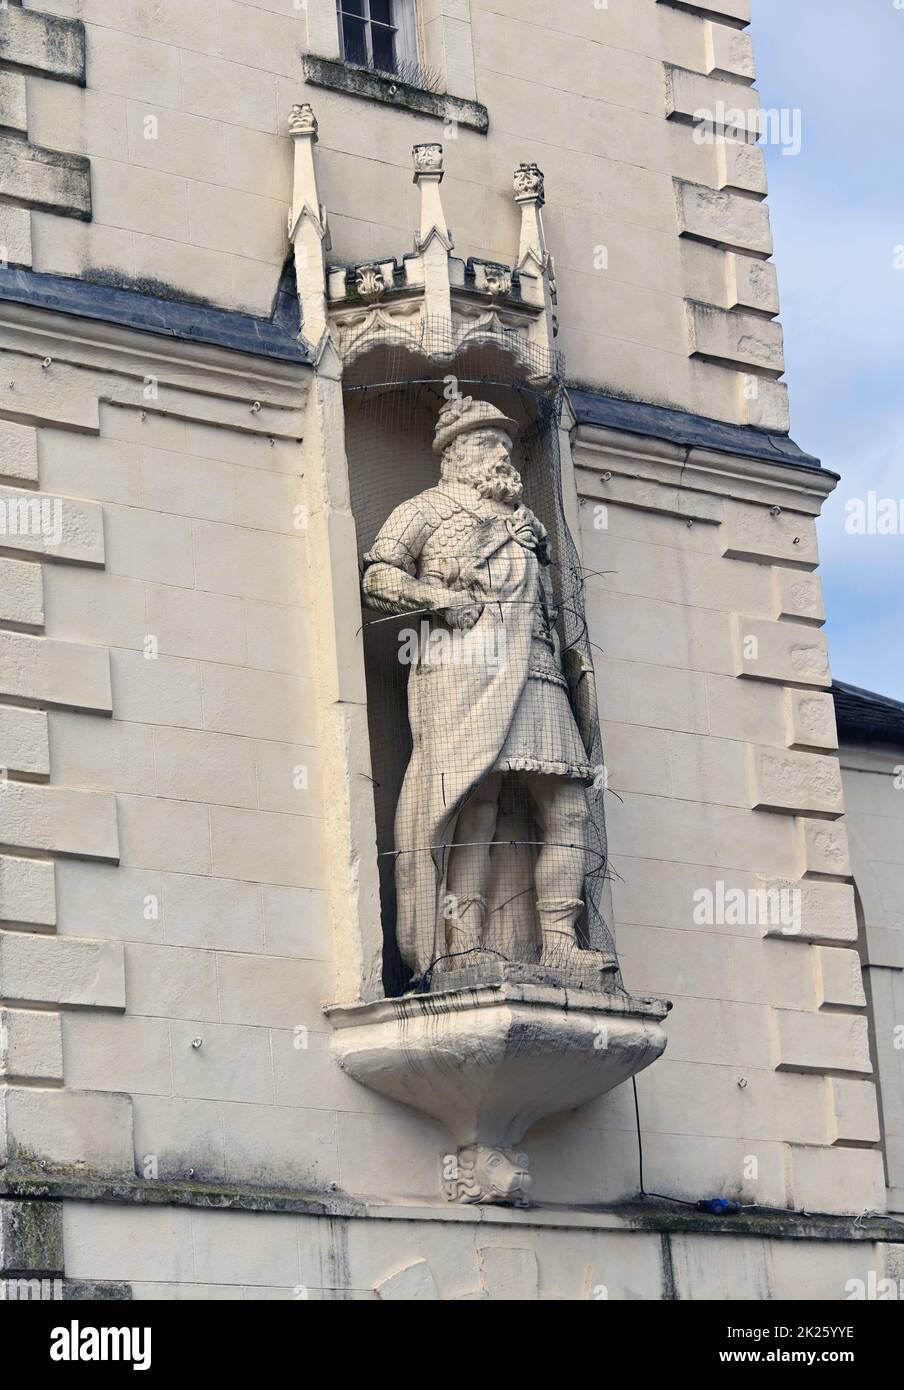 Statue von Sir William Wallace von Robert Forrest. Pfarrkirche des Heiligen Nikolaus. High Street, Lanark, Lanarkshire, Schottland, Großbritannien, Europa. Stockfoto